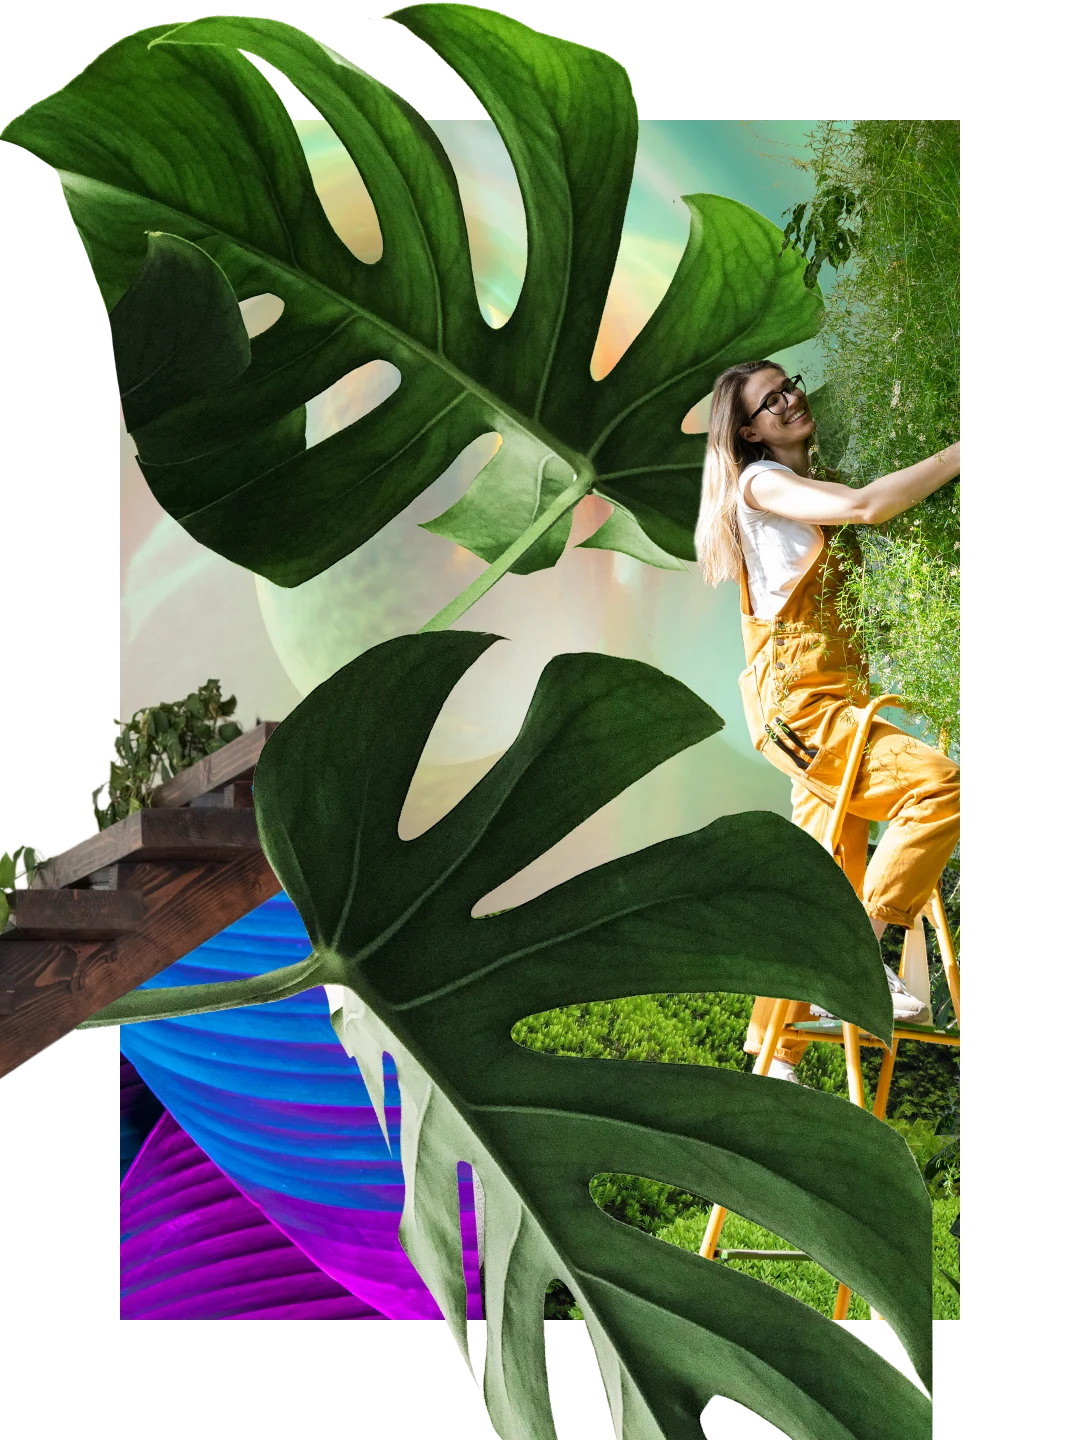 Eine Collage mit Grünpflanzen. Zwei große Blätter einer Monstera-Pflanze. Im Hintergrund eine Treppe mit Blättern. Eine weiße Frau in einer gelben Latzhose auf einer Leiter, die sich um eine Pflanze kümmert.
